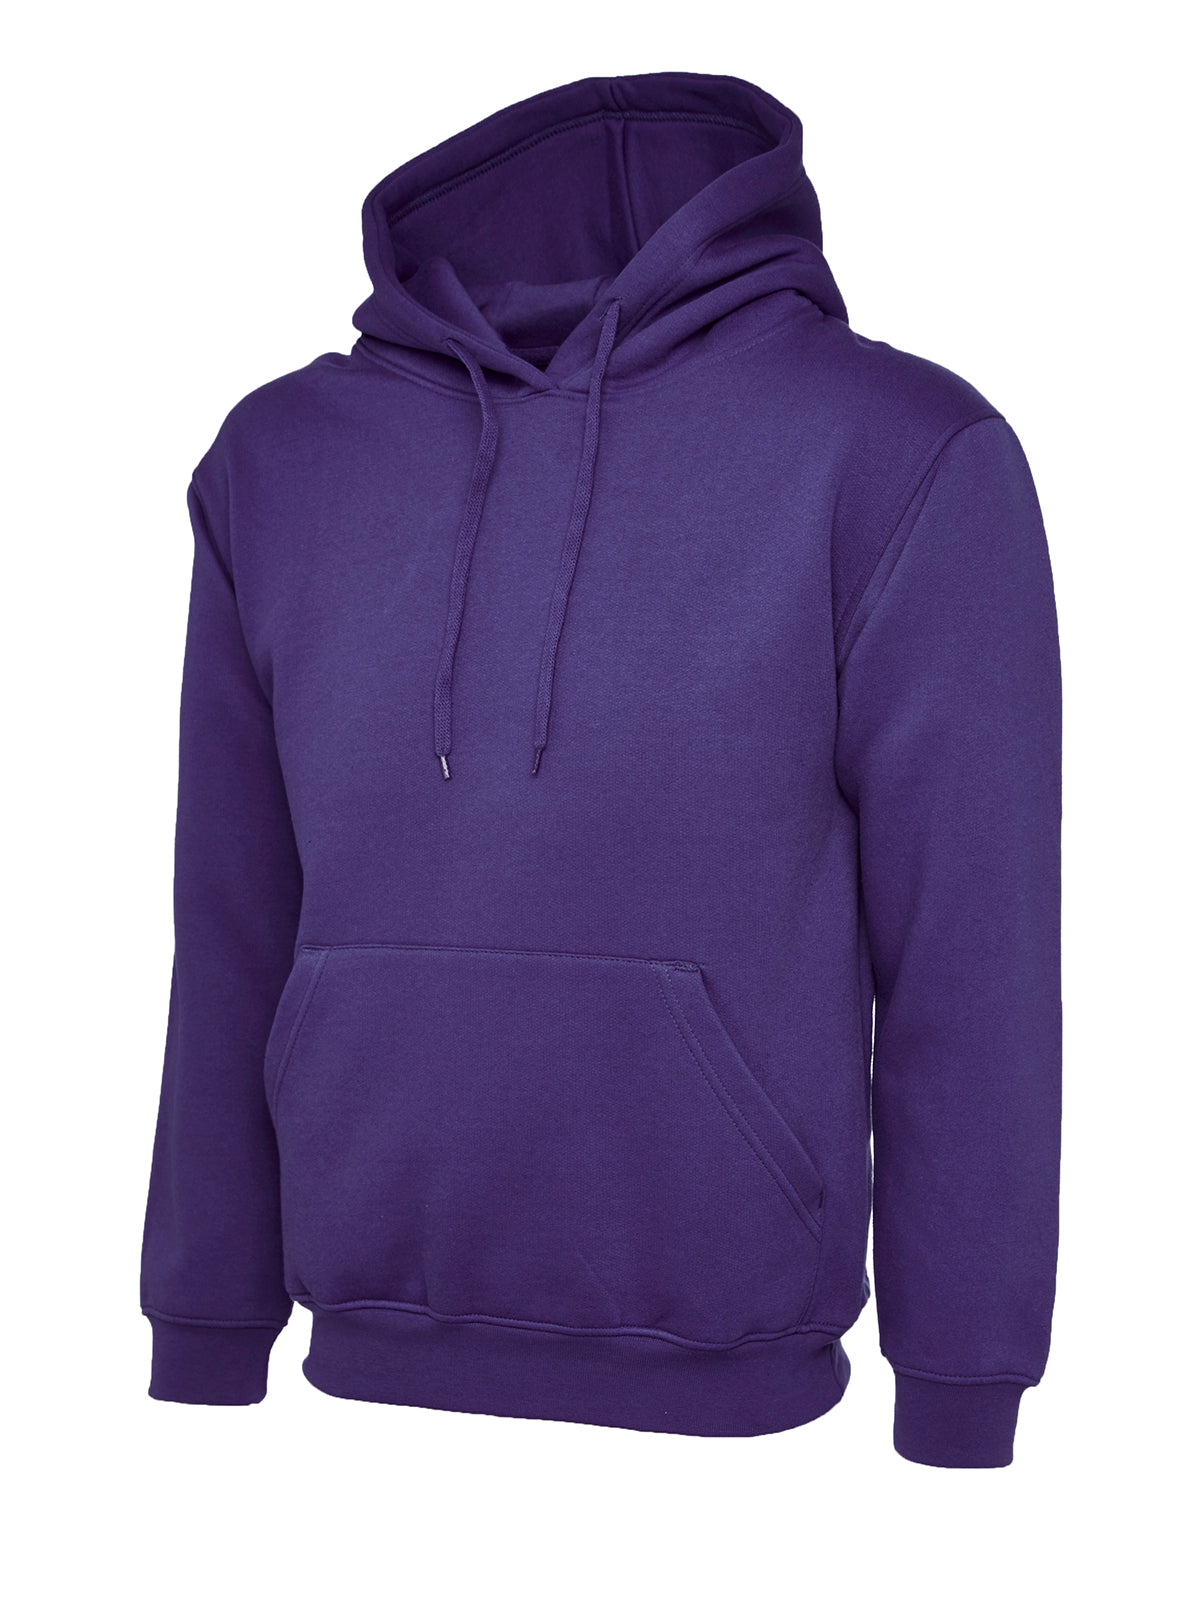 Uneek Ladies Deluxe Hooded Sweatshirt UC510 - Purple